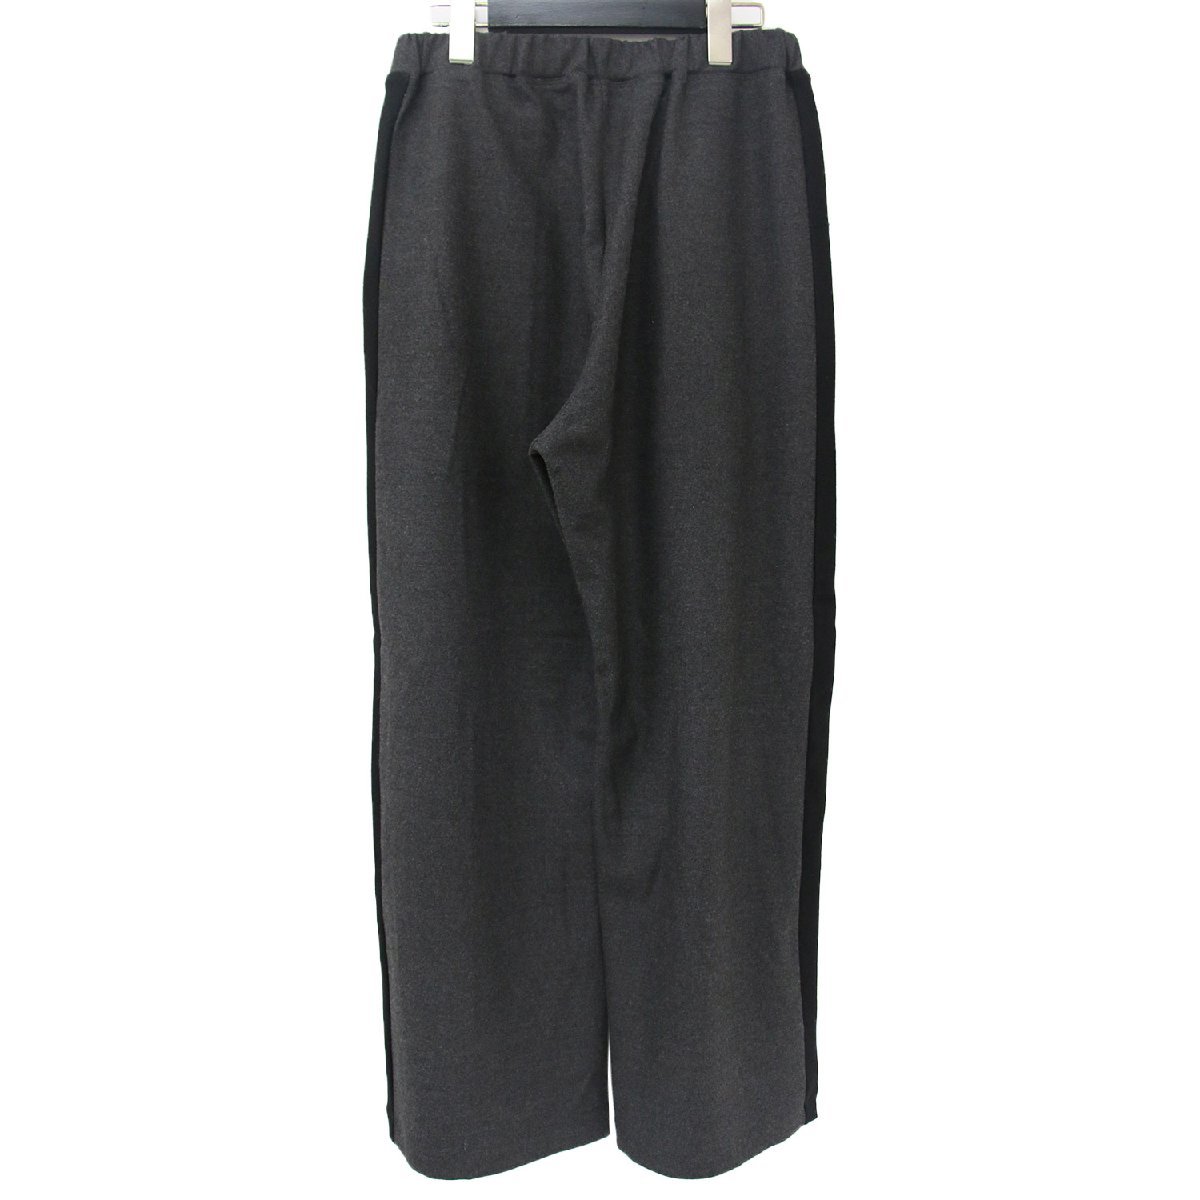 FLORENT Florent брюки широкий угольно-серый черный 34(XS) распорка боковой линия центральная стойка n tuck низ брюки 